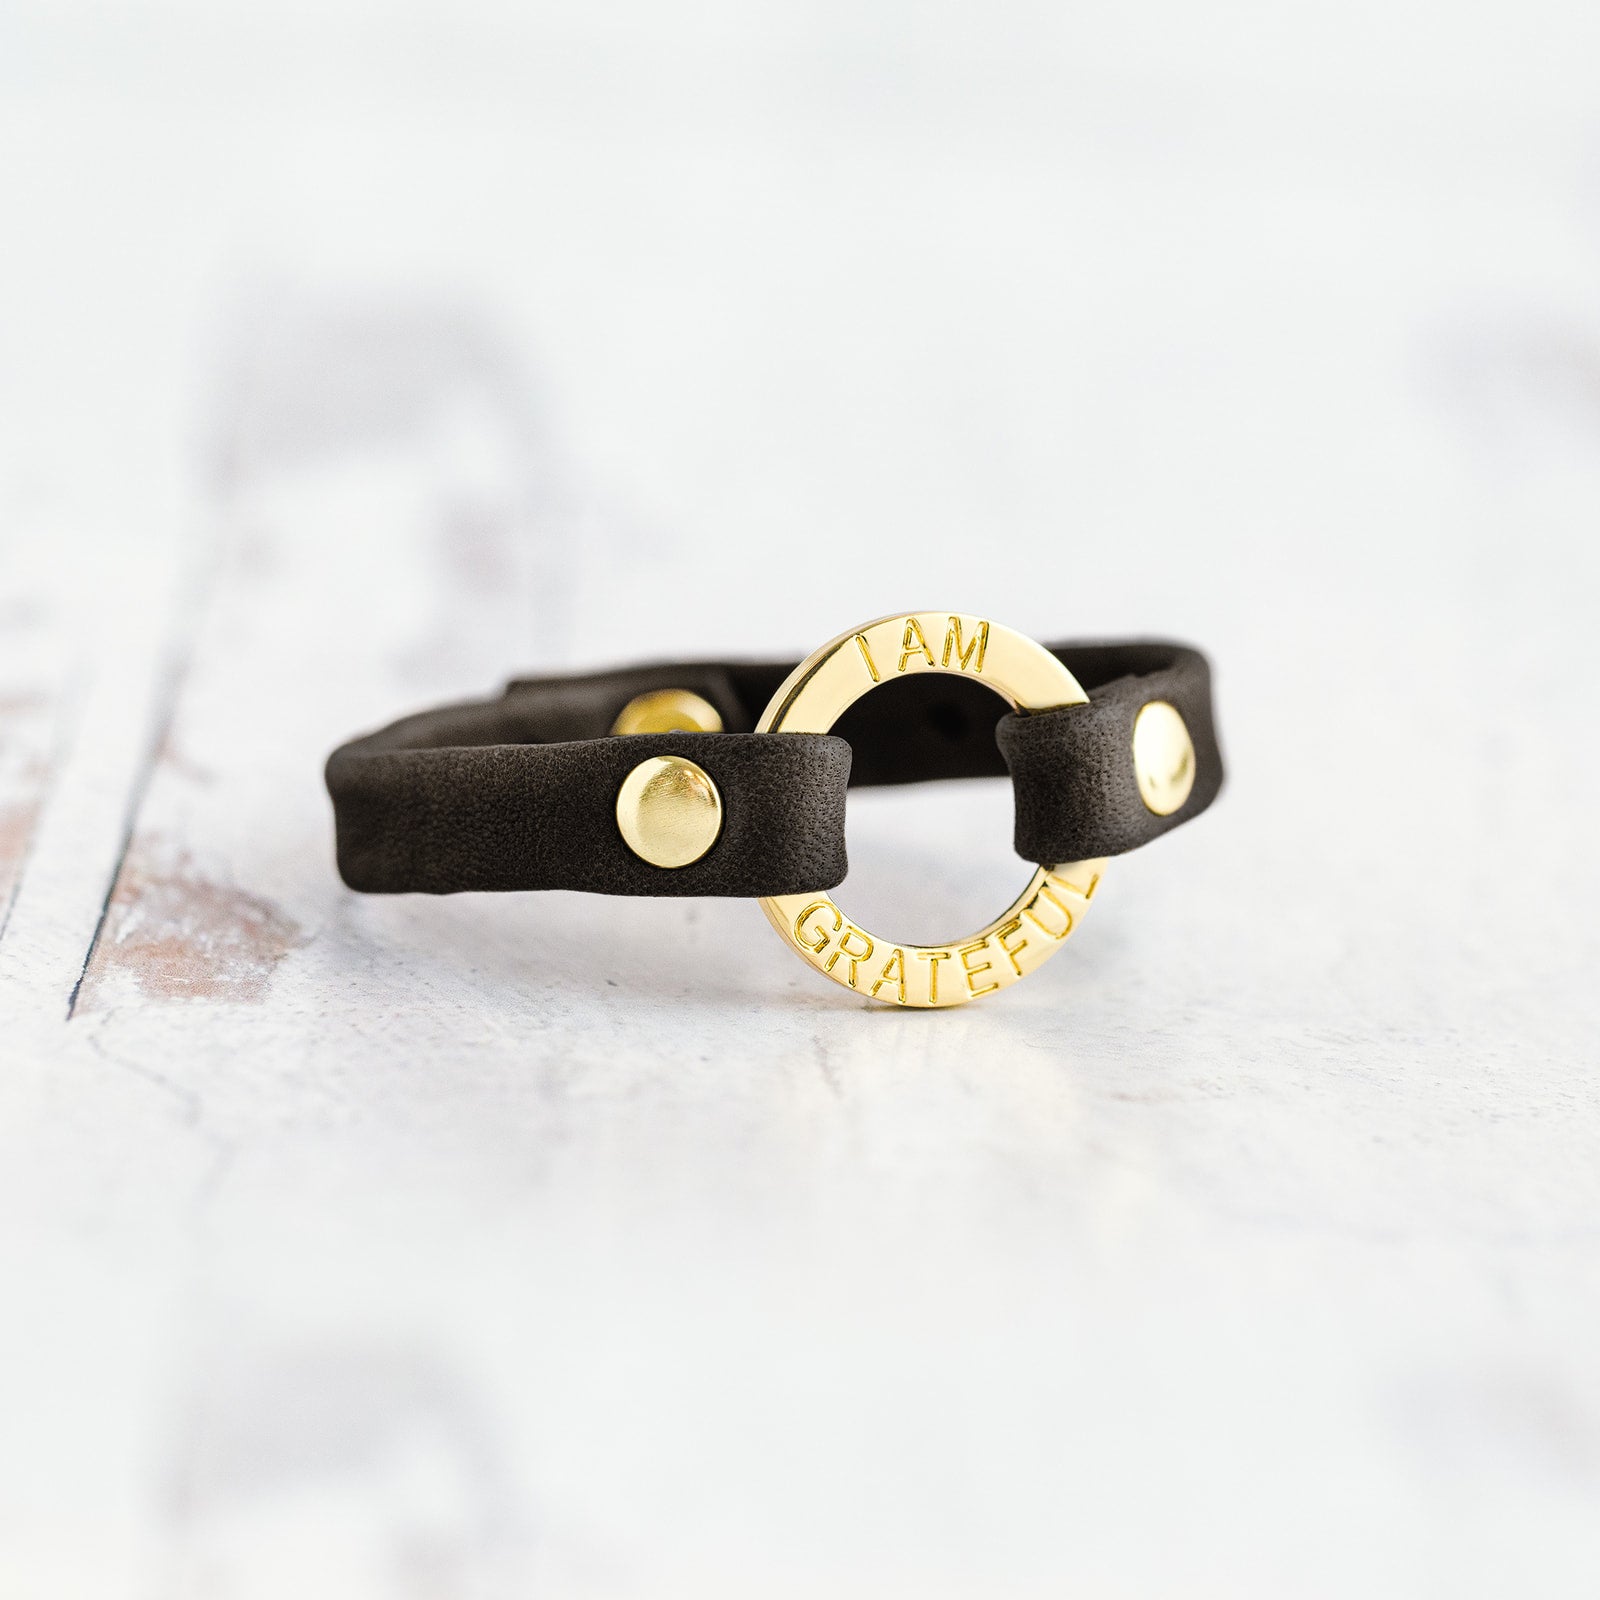 Mantra “ I AM GRATEFUL” Bracelet - Gold